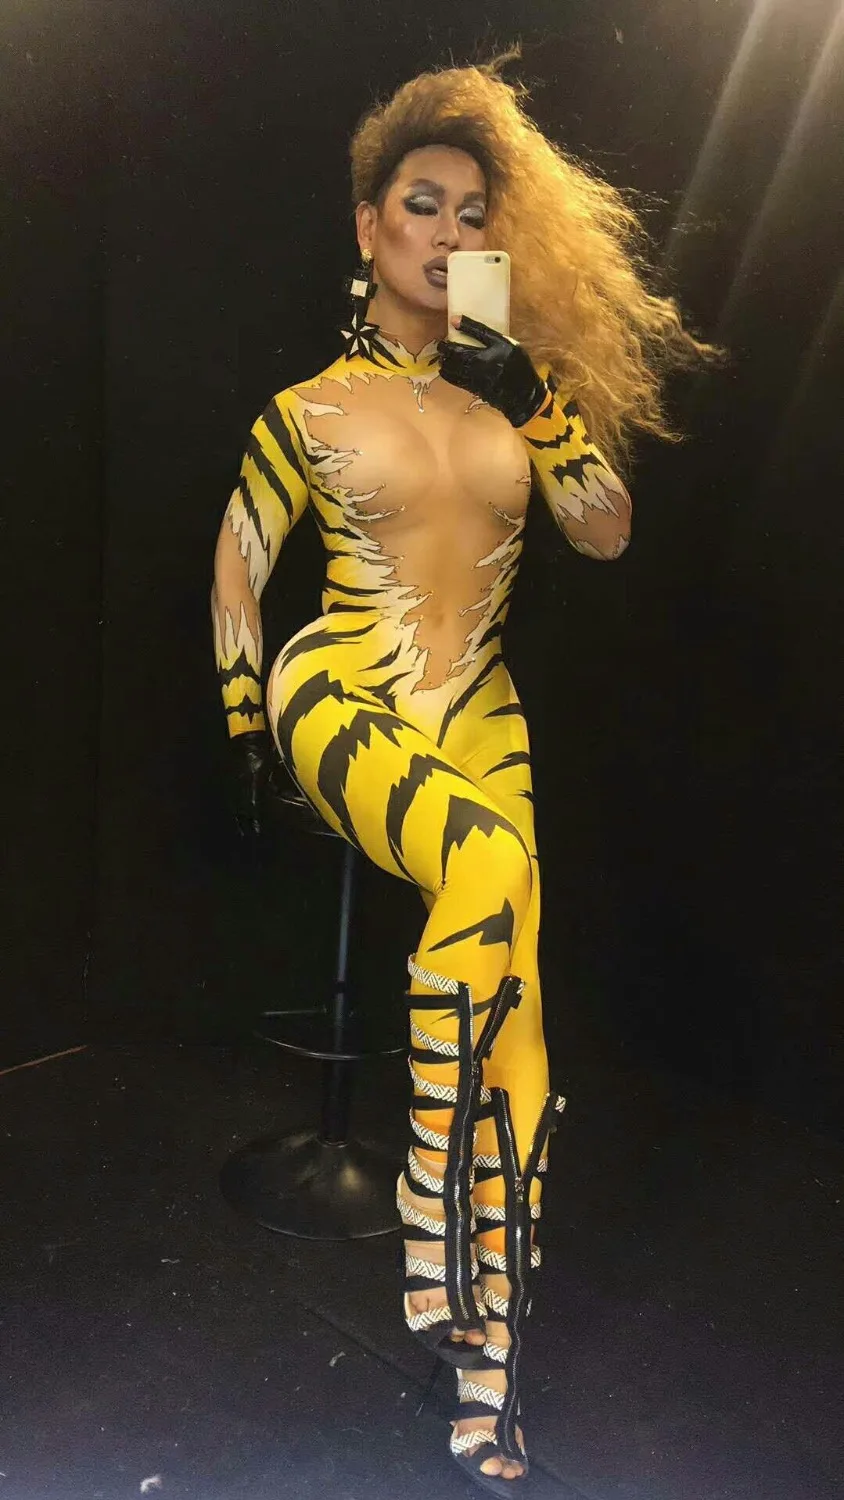 Женский комбинезон с тигровым принтом, украшенный стразами и облегающий тело. Костюм для выступлений на сцене.